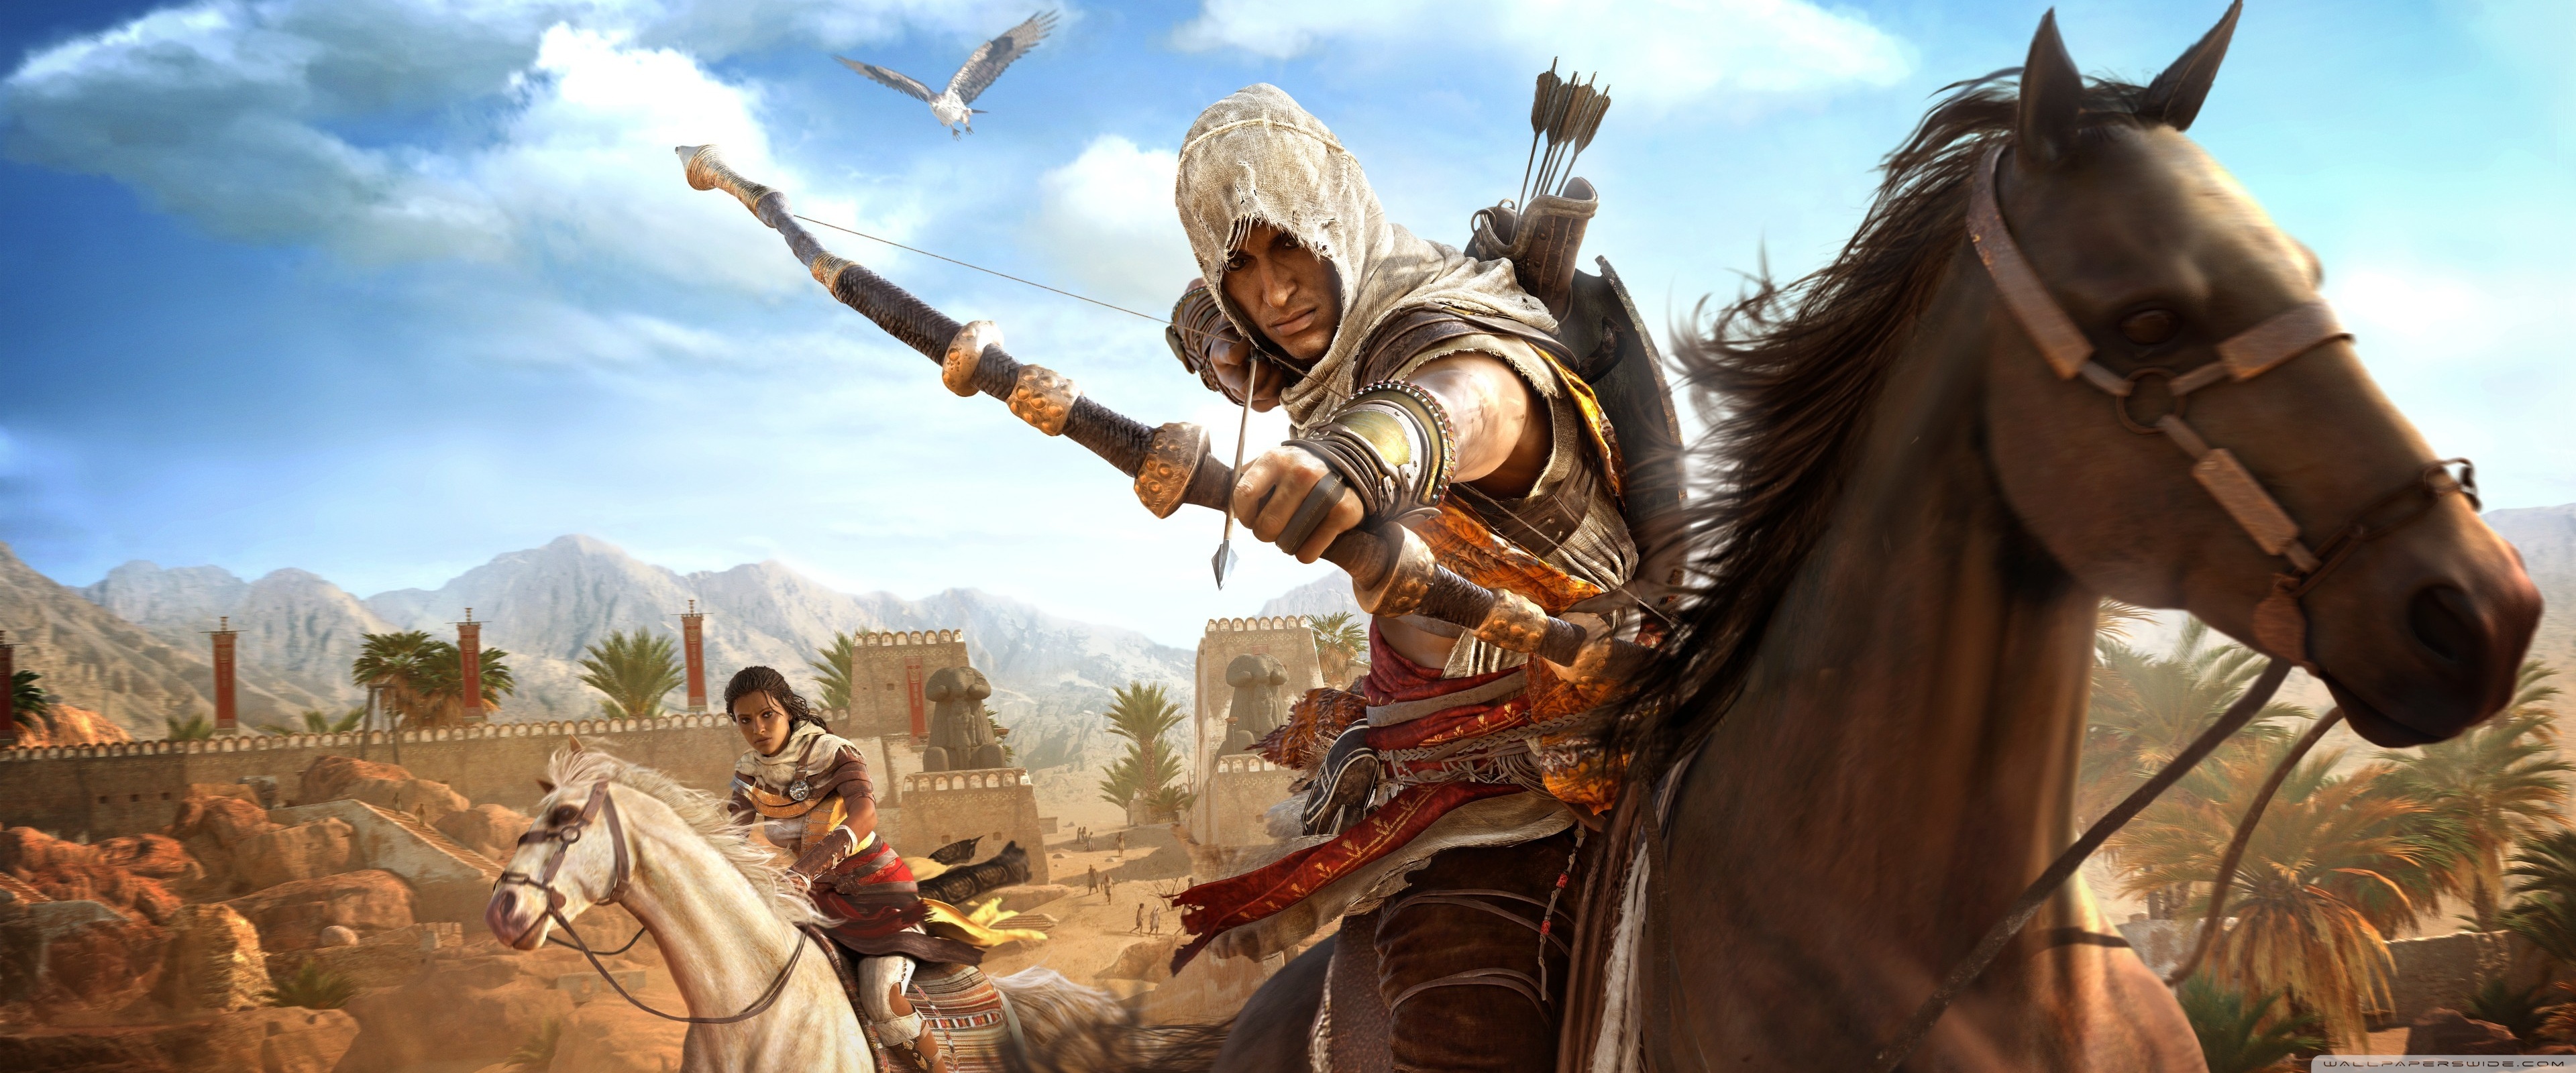 Assassin's Creed Origins The Hidden Ones , HD Wallpaper & Backgrounds